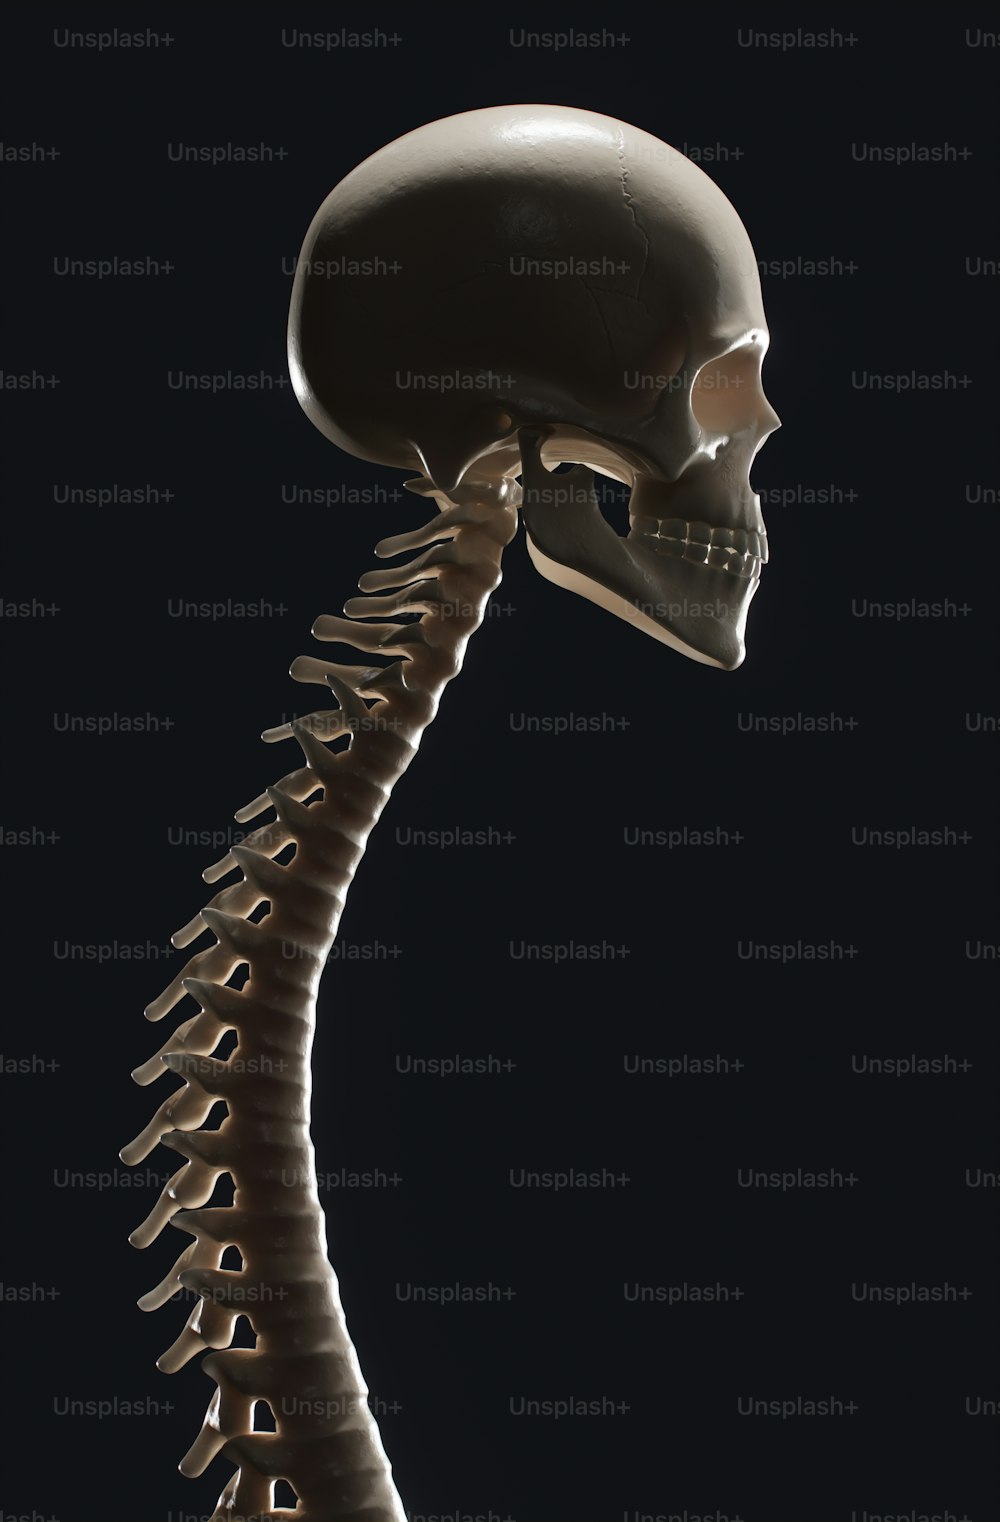 非常に長い首を持つ人間の骨格